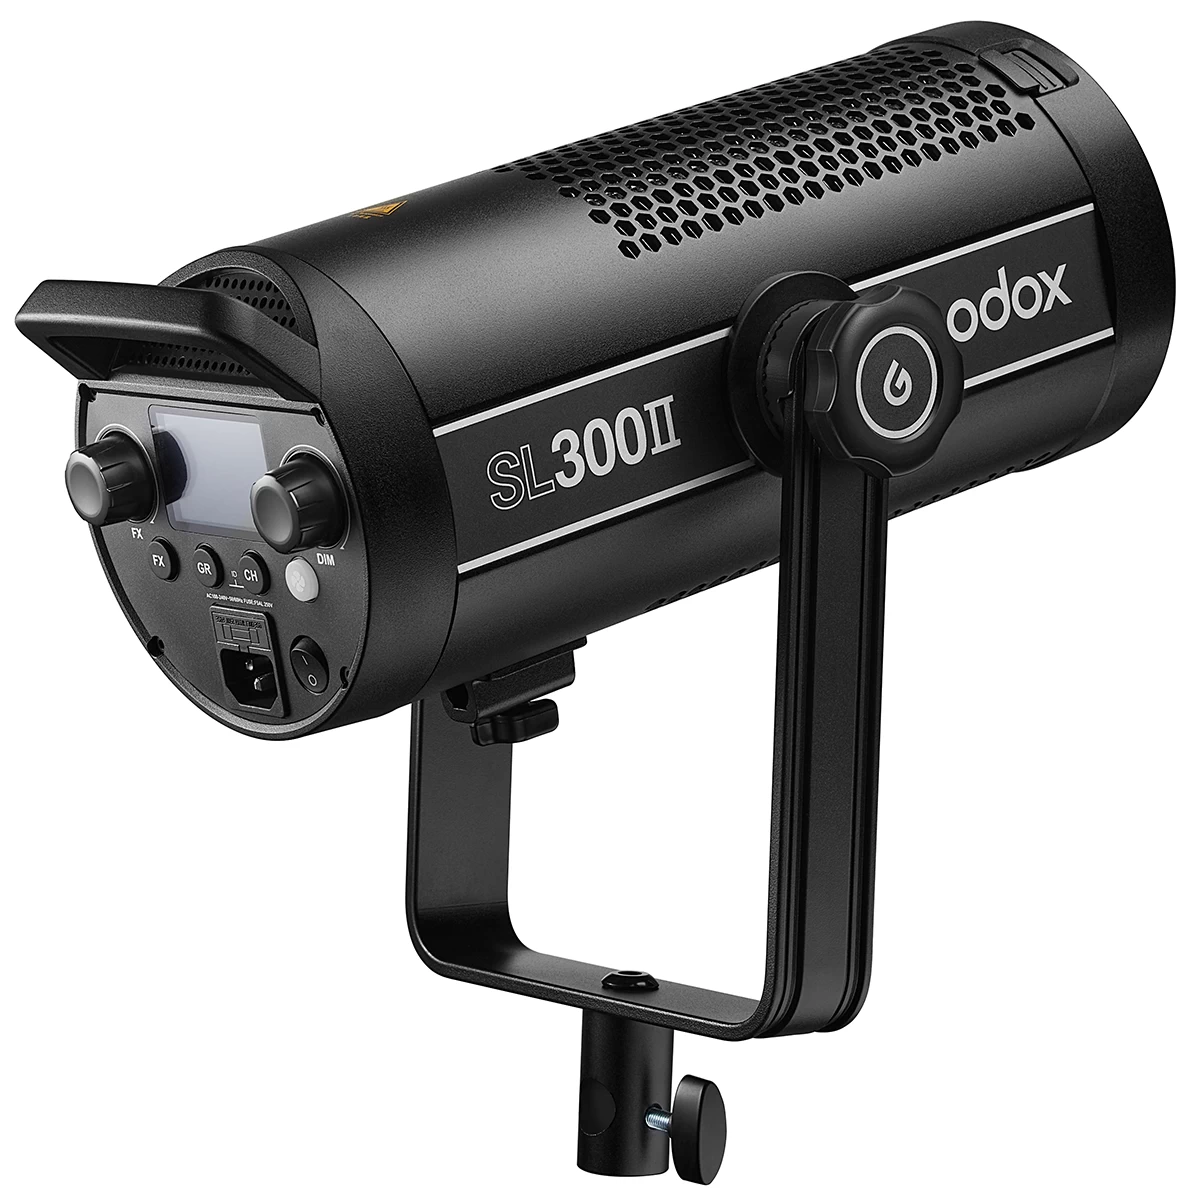 Cтудийный осветитель GODOX SL300II